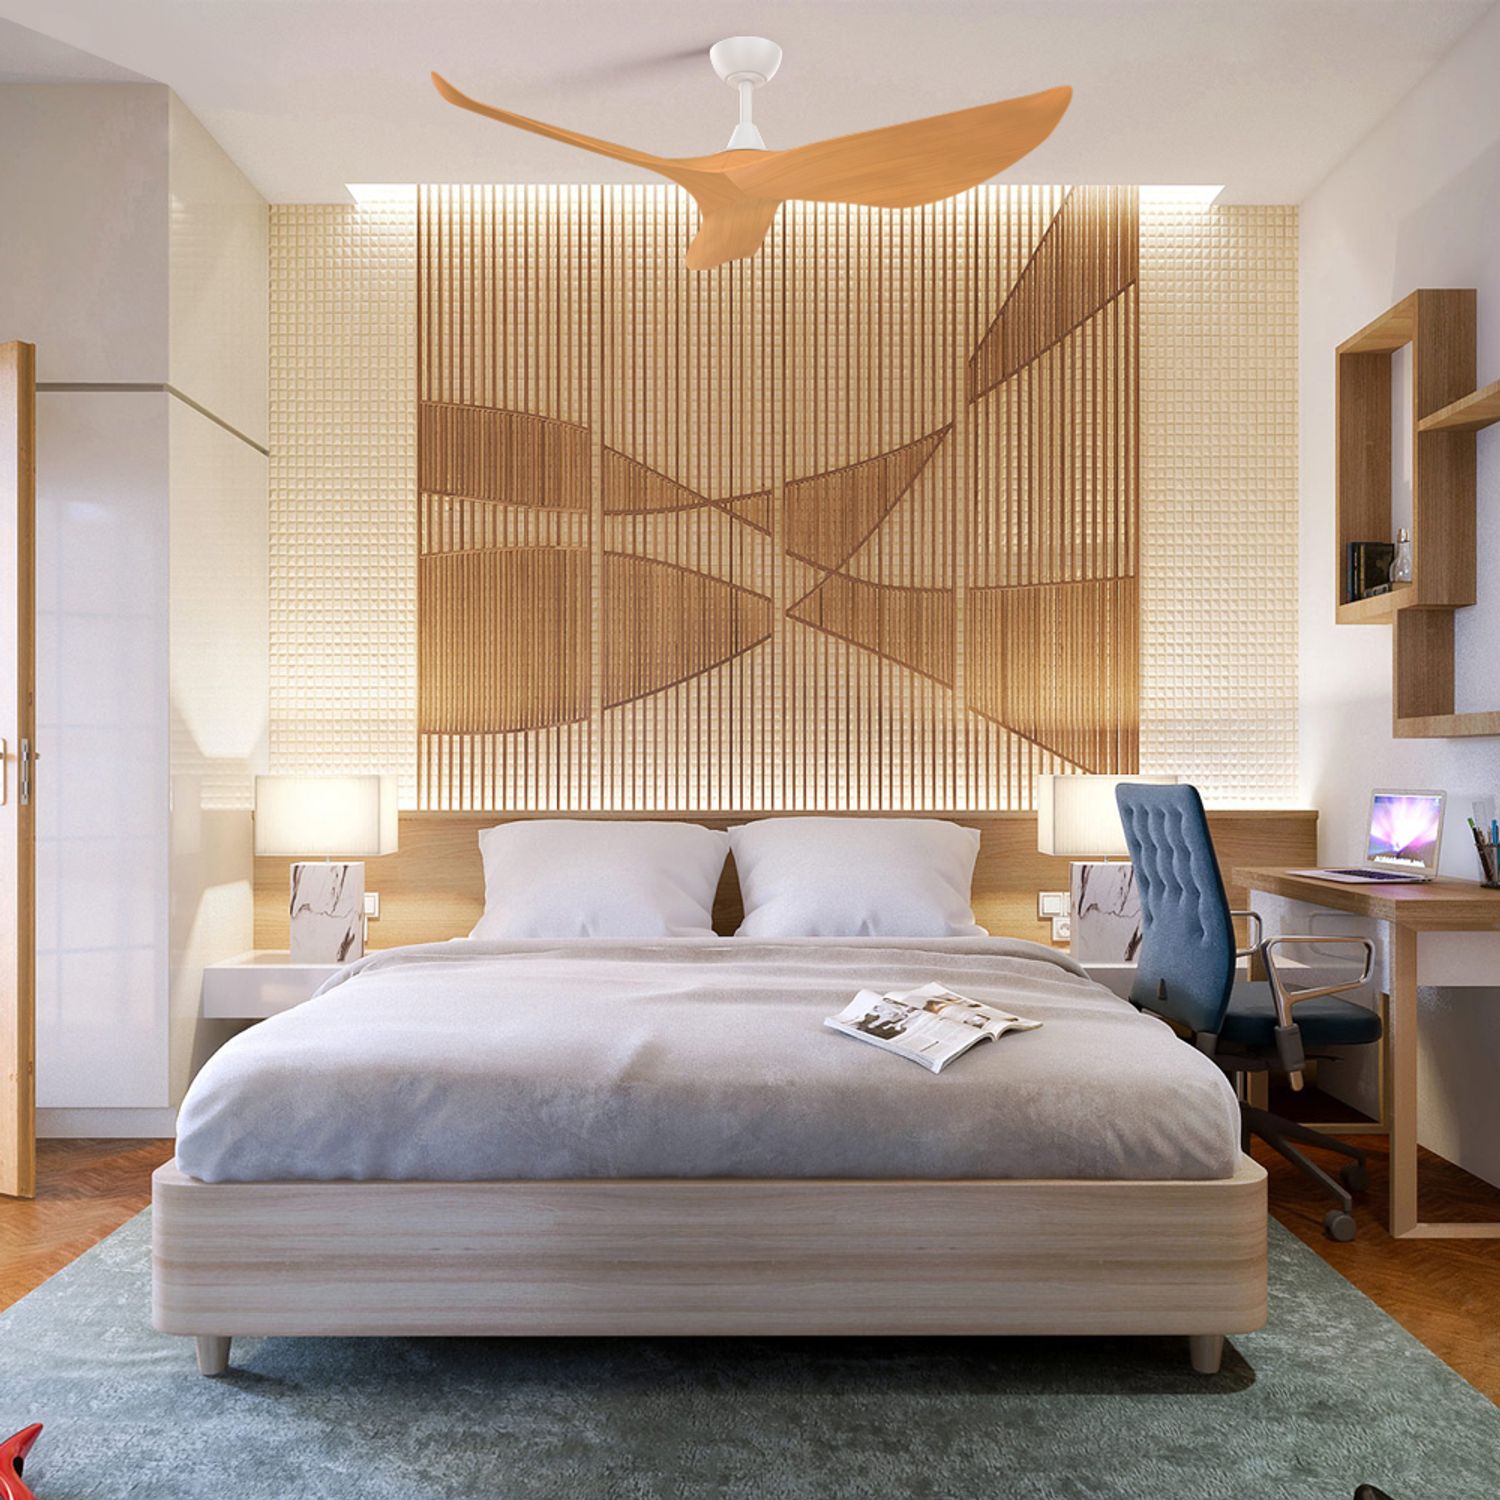 KBS Low Profile Reversible Solid Wood Ceiling Fan in a bedroom